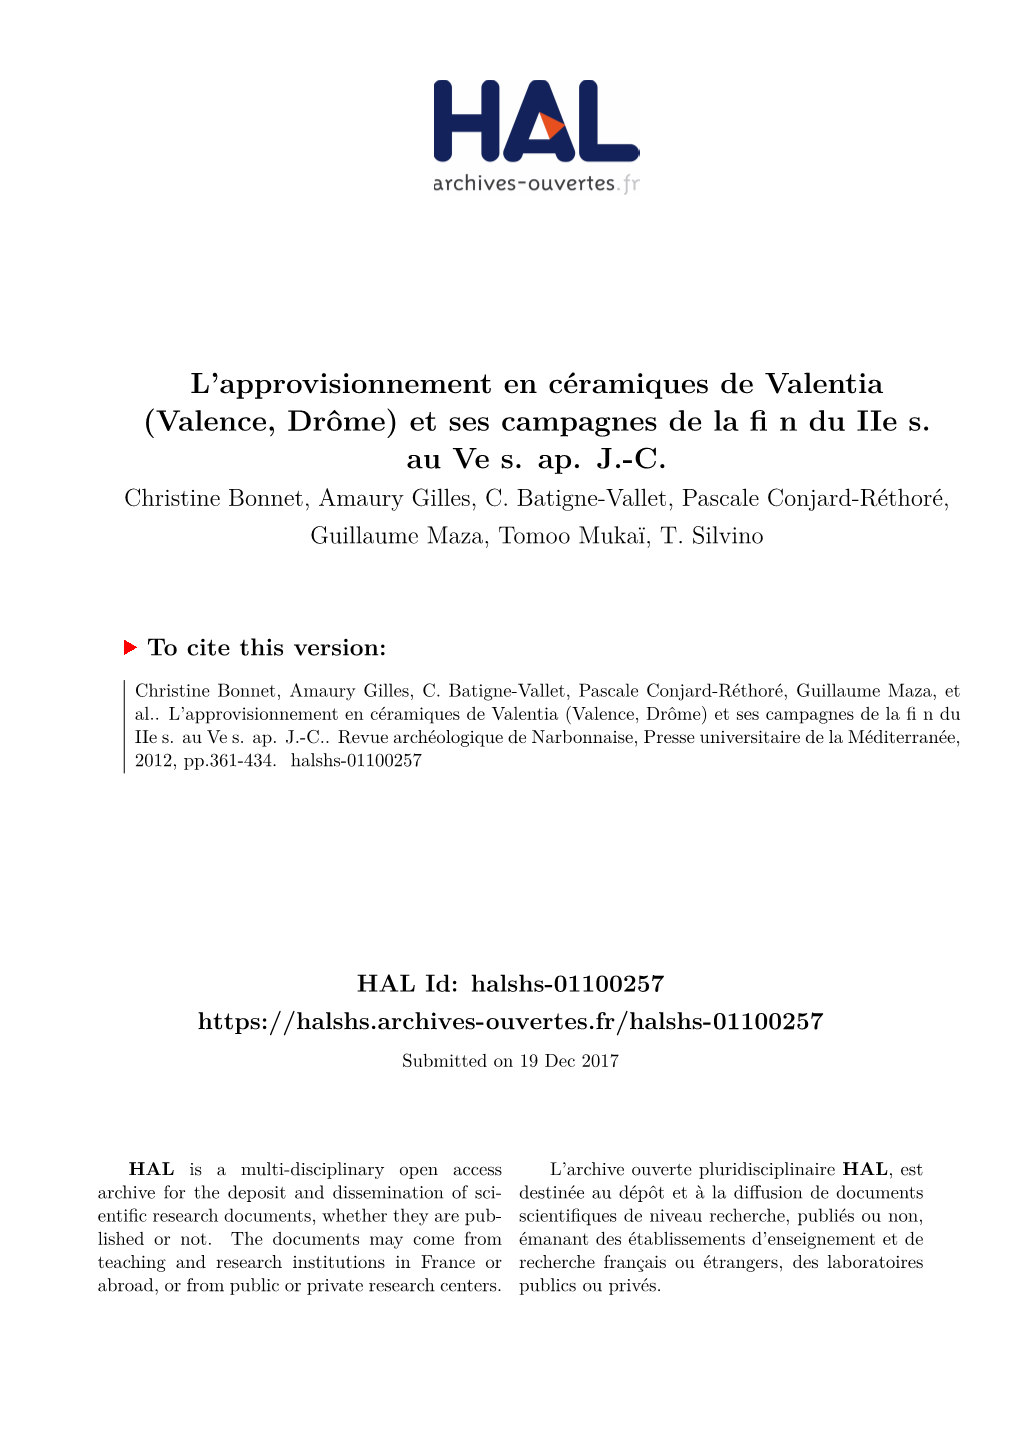 L'approvisionnement En Céramiques De Valentia (Valence, Drôme) Et Ses Campagnes De La Fi N Du Iie S. Au Ve S. Ap. J.-C